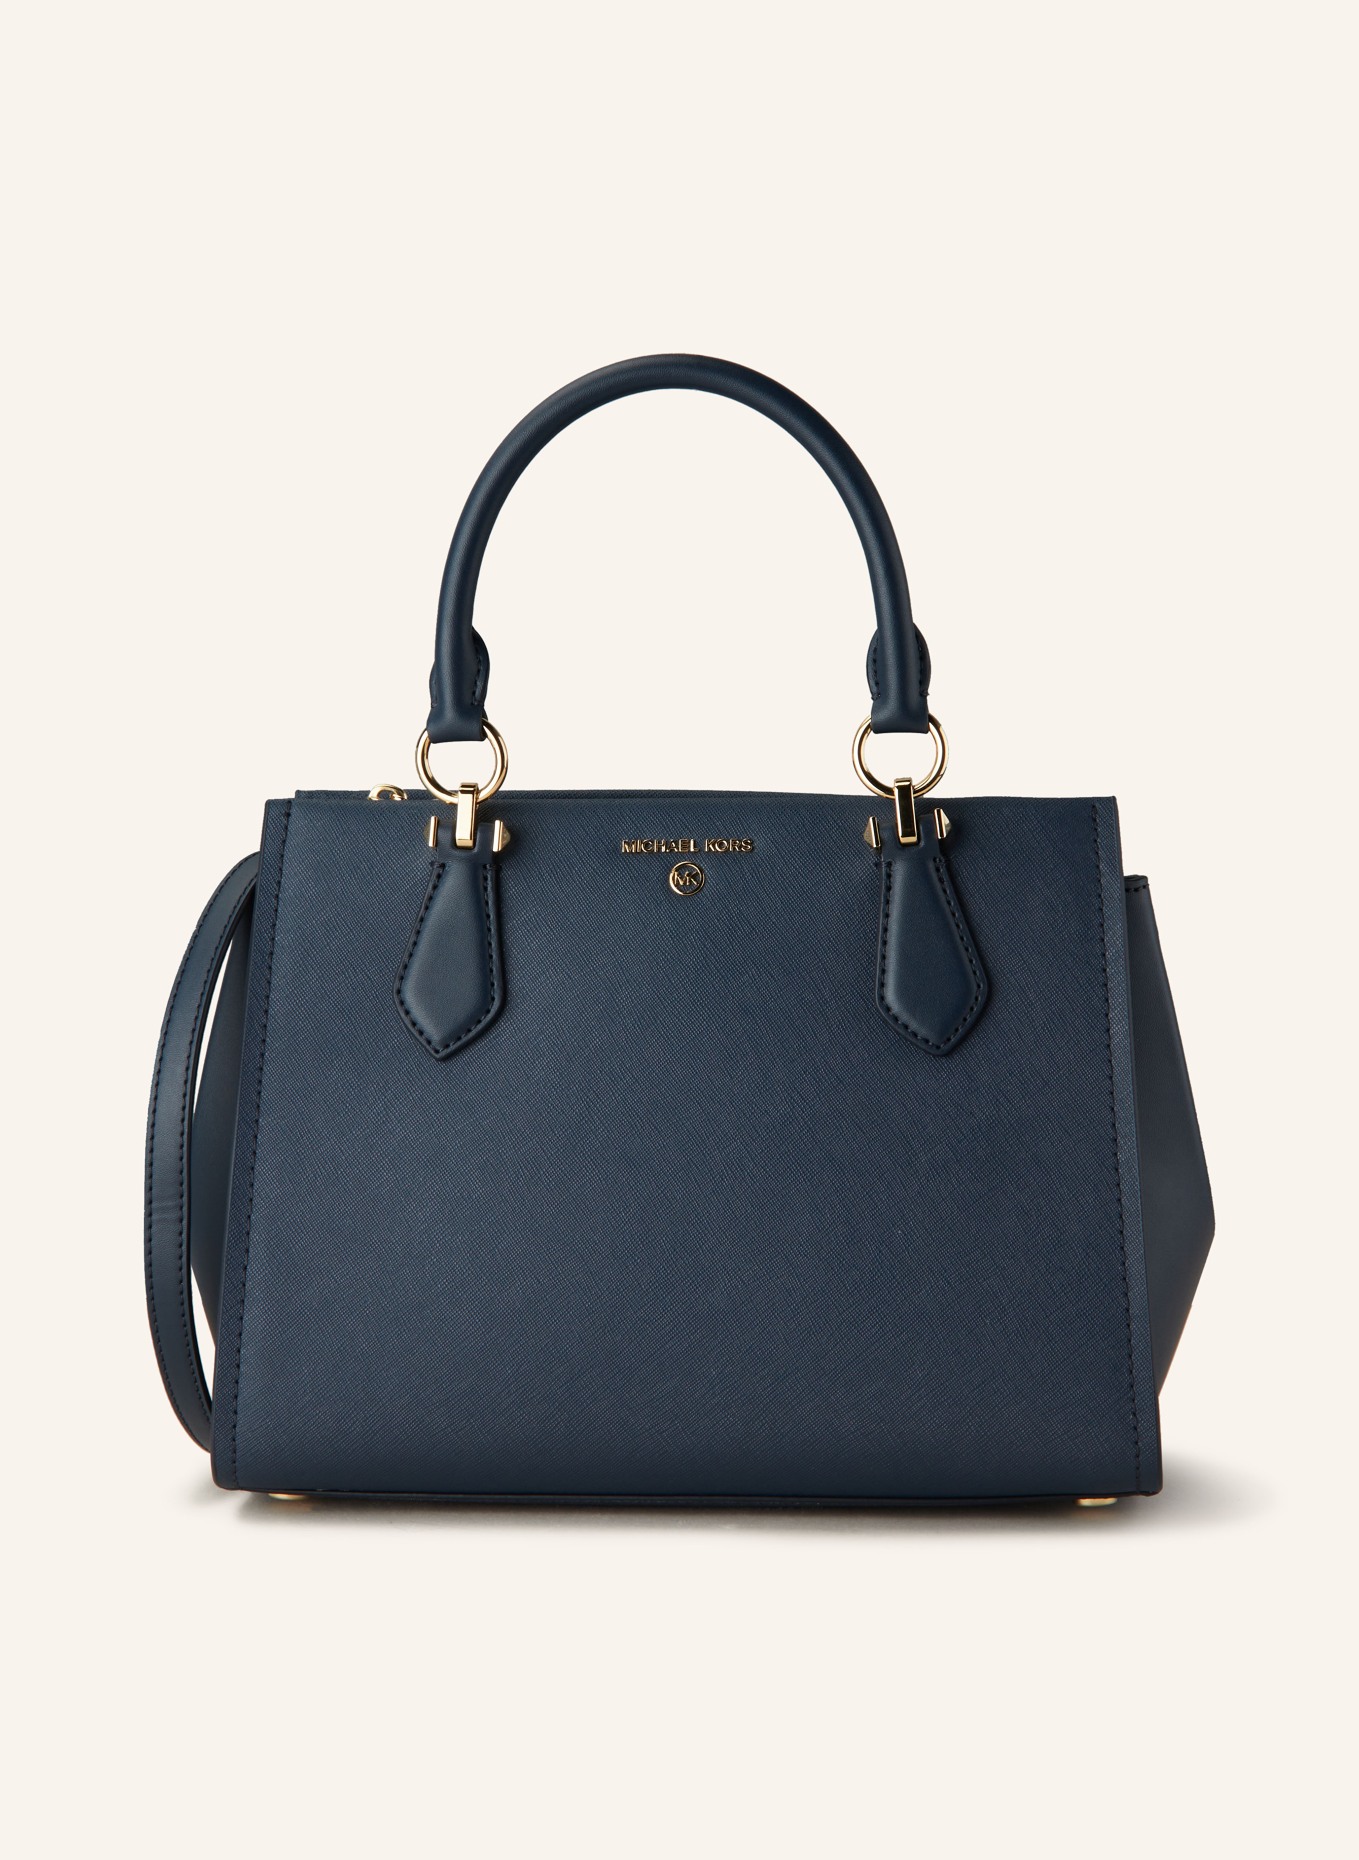 MICHAEL KORS Saffiano handbag MARILYN MEDIUM, Color: 406 NAVY (Image 1)